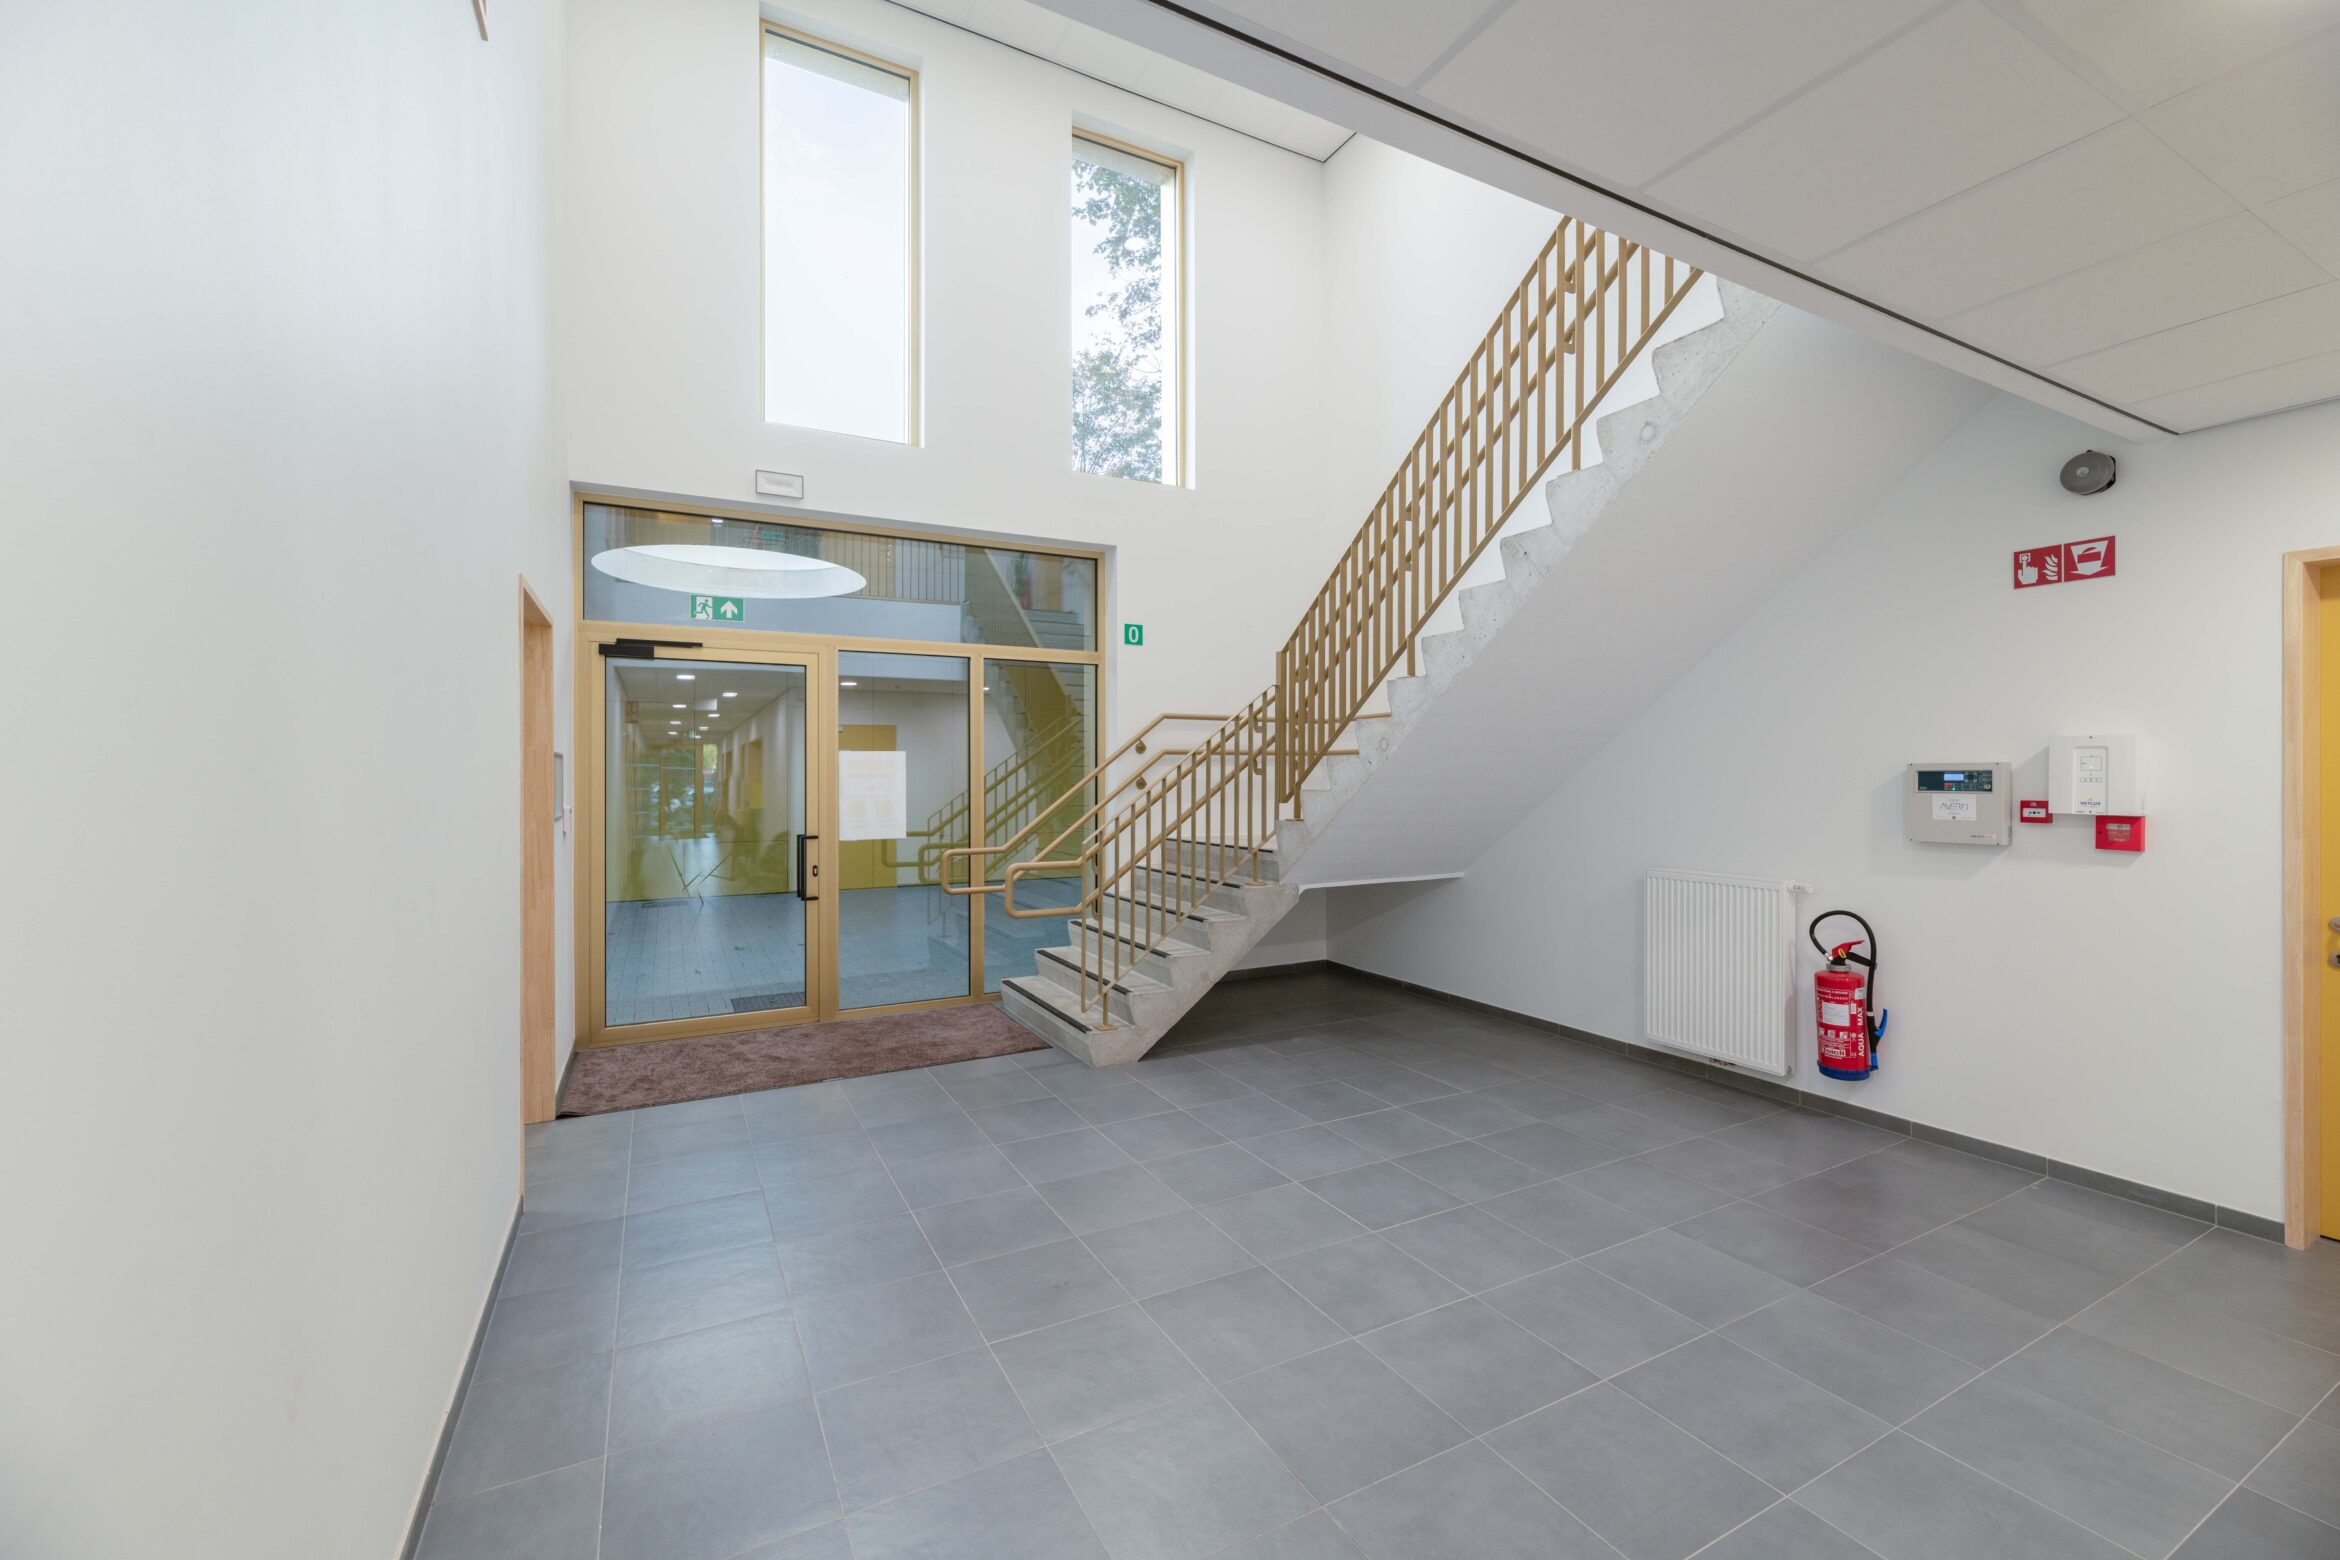 School De Vlindertuin in Mechelen als onderwerp van stabiliteitsstudie door ingenieursbureau Lisst in samenwerking met A33 architecten